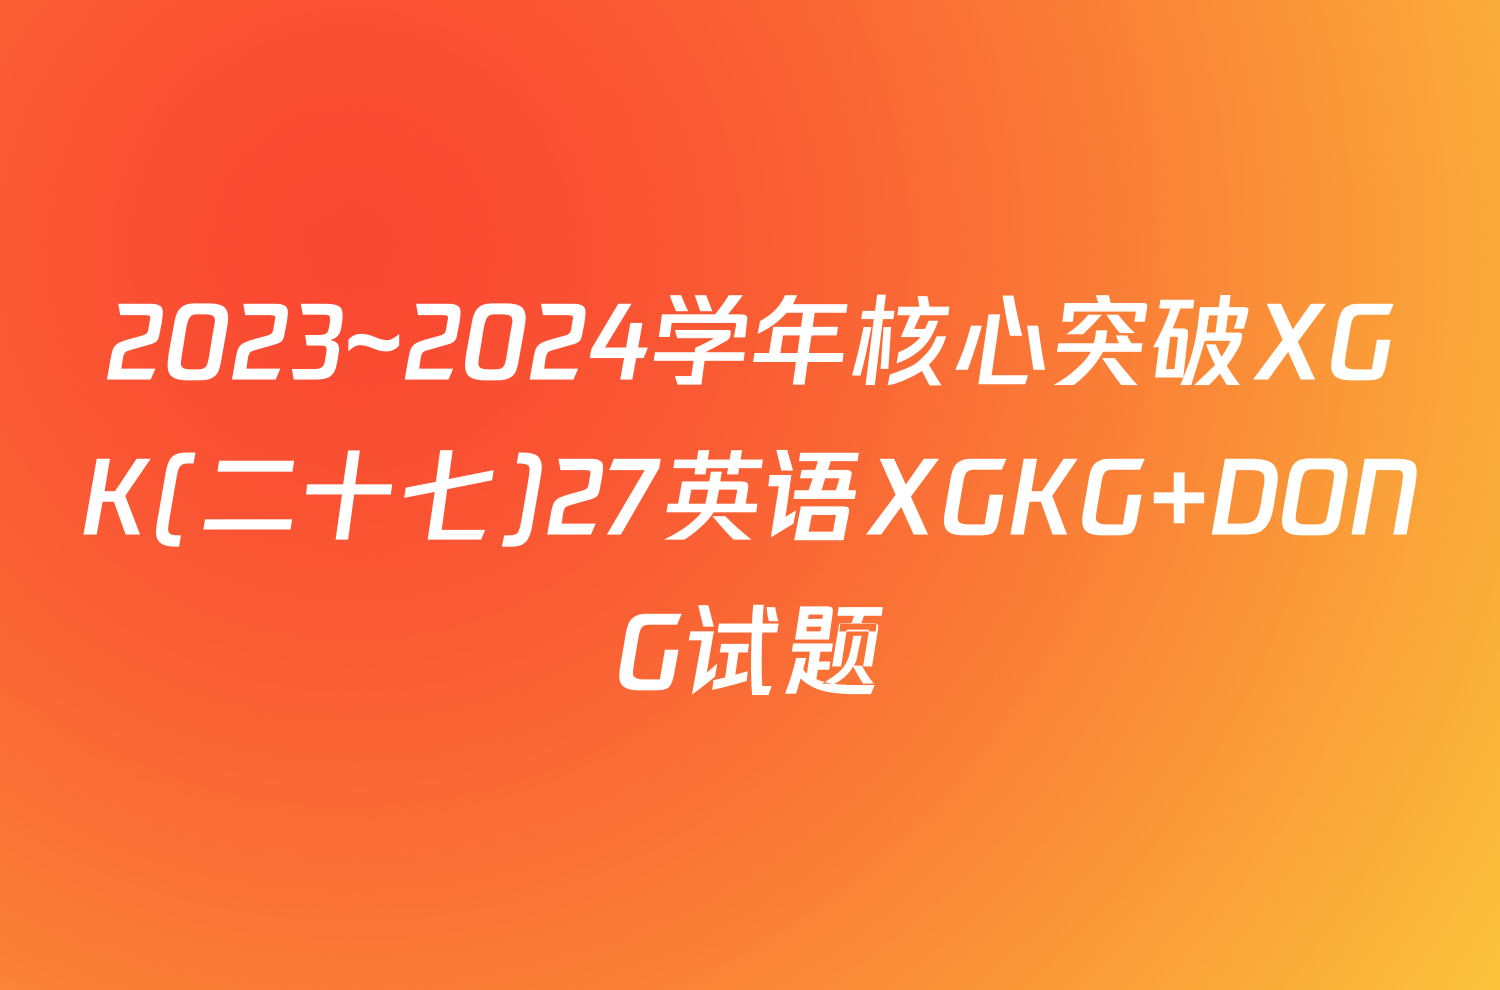 2023~2024学年核心突破XGK(二十七)27英语XGKG DONG试题